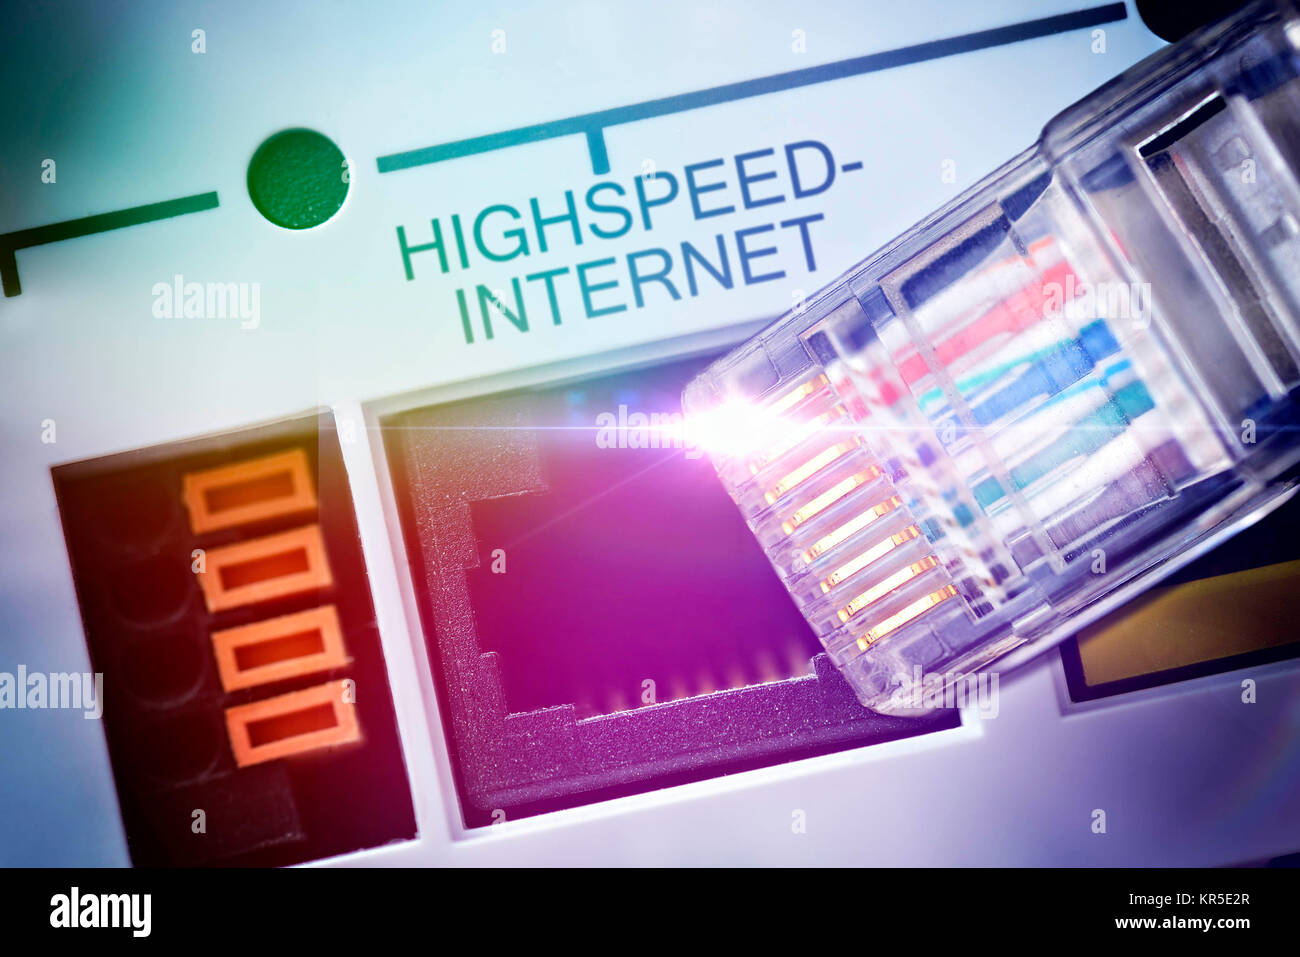 Internet câble, Internet haute vitesse, l'extension de réseau à large bande, Internetkabel Breitbandausbau Highspeed-Internet,, Banque D'Images